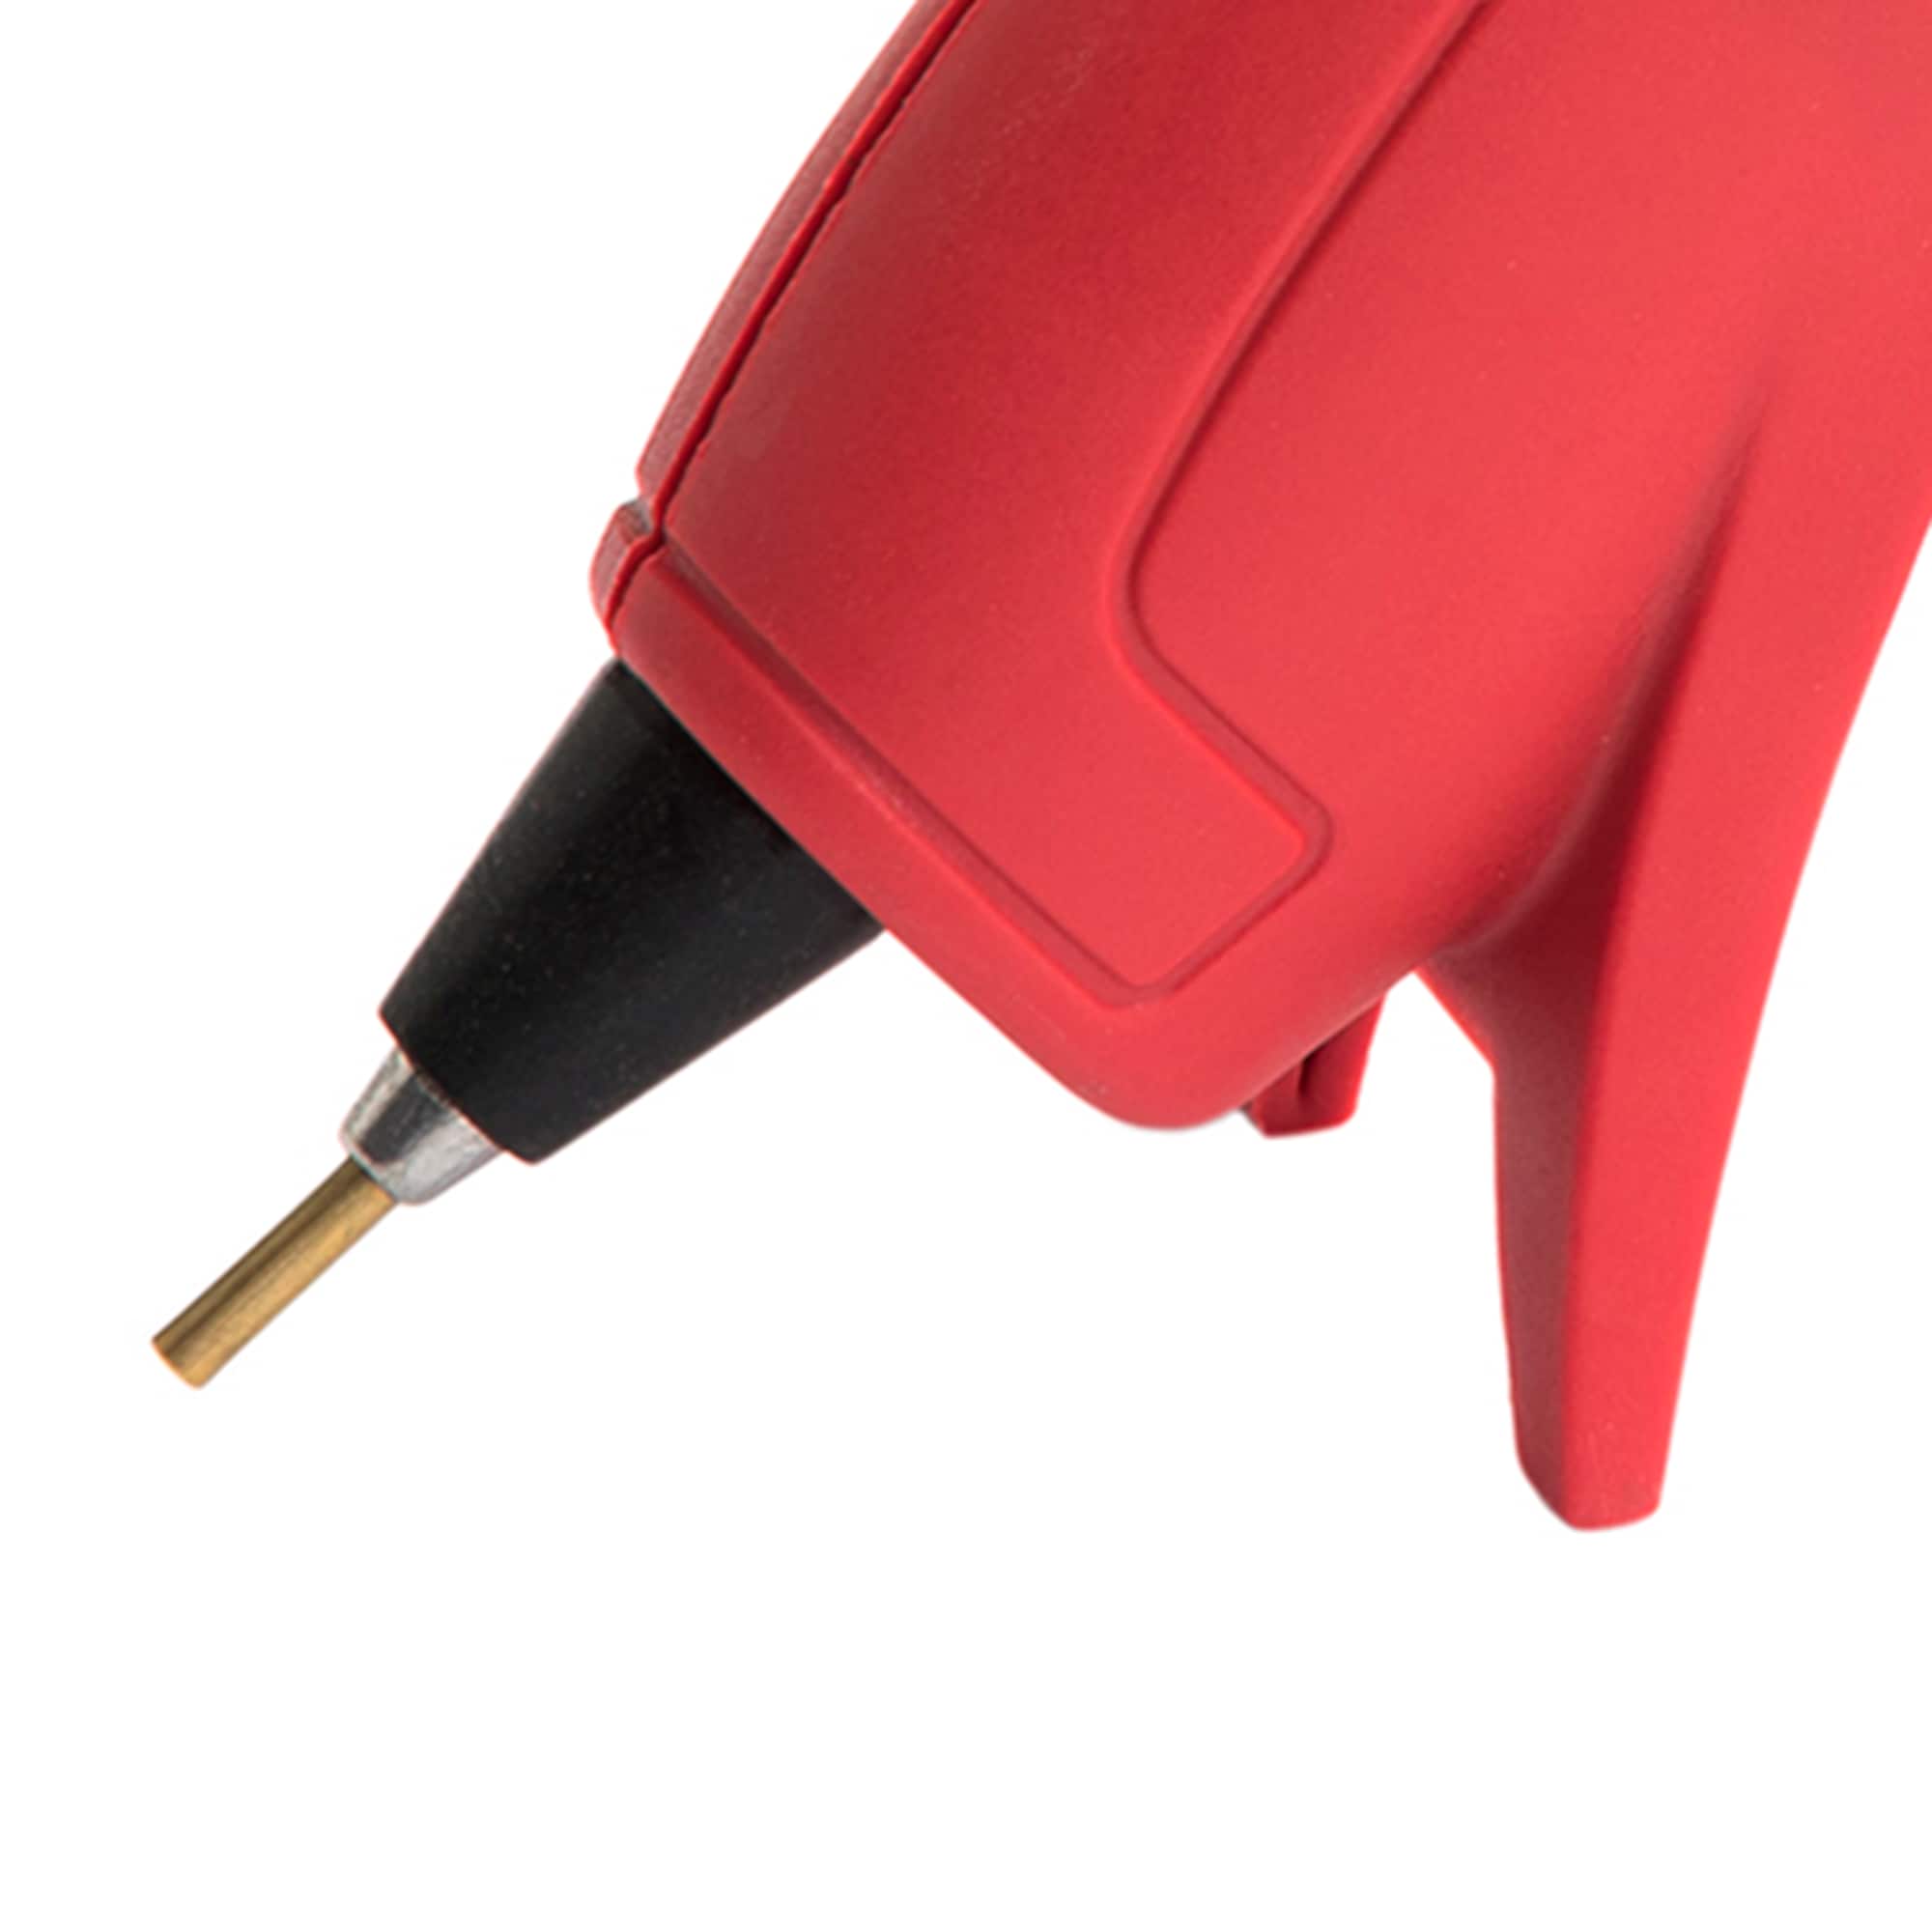 Arrow Dual Temp Glue Gun (20 Watts) - GT20DT, UL Safety Listed